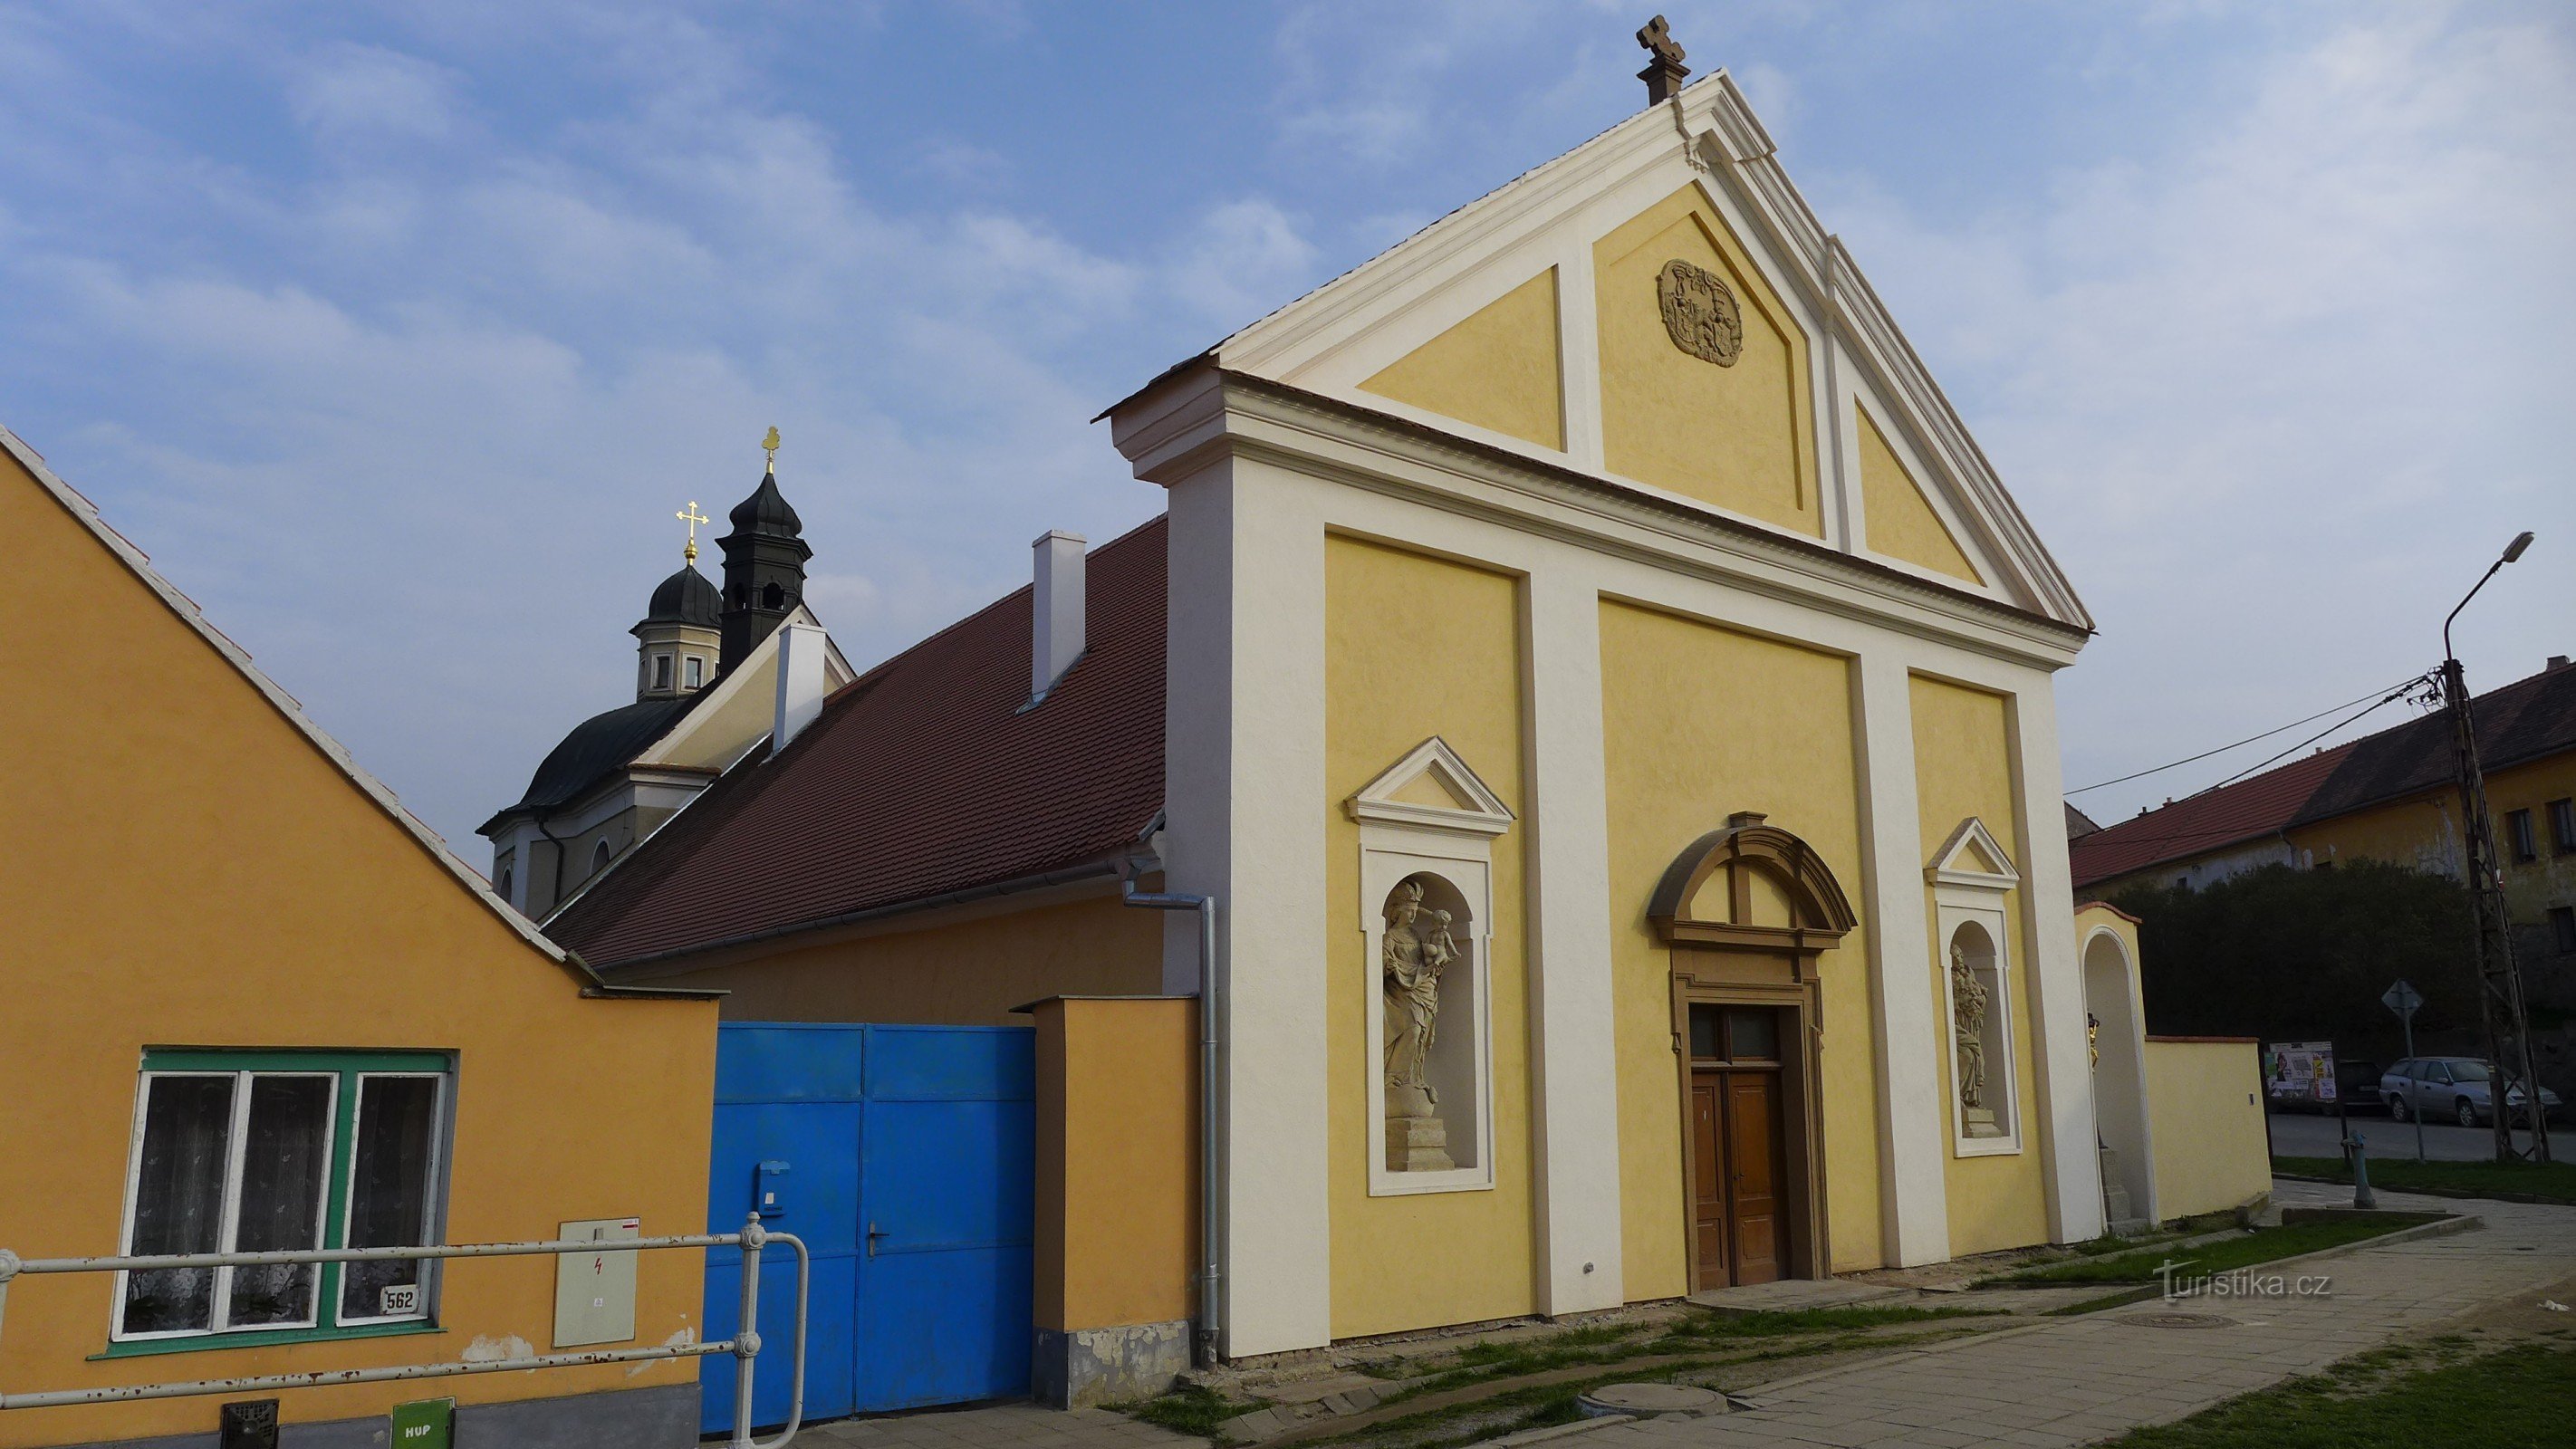 Jaroměřice nad Rokytnou - St. Catherine's hospital and chapel